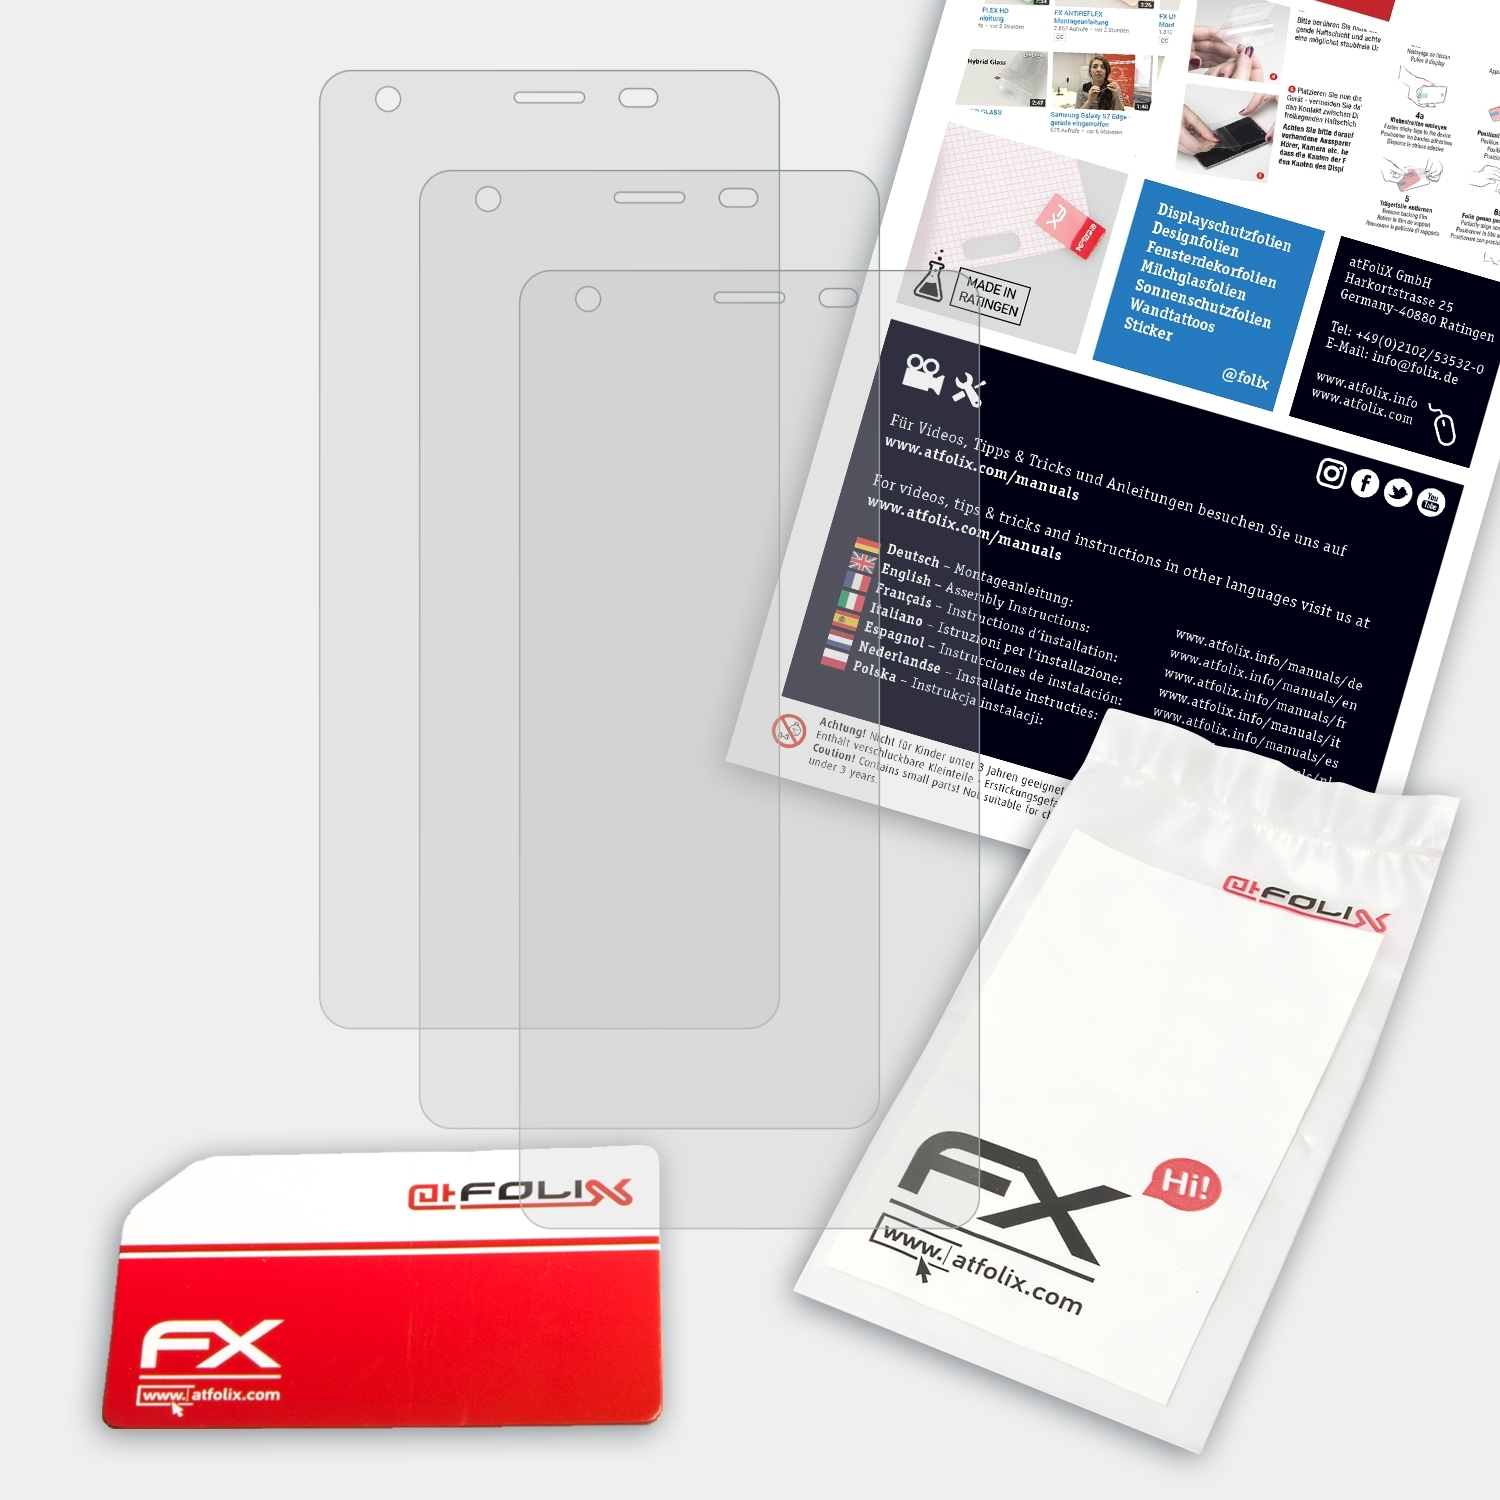 ATFOLIX 3x FX-Antireflex Displayschutz(für Ulefone Power)